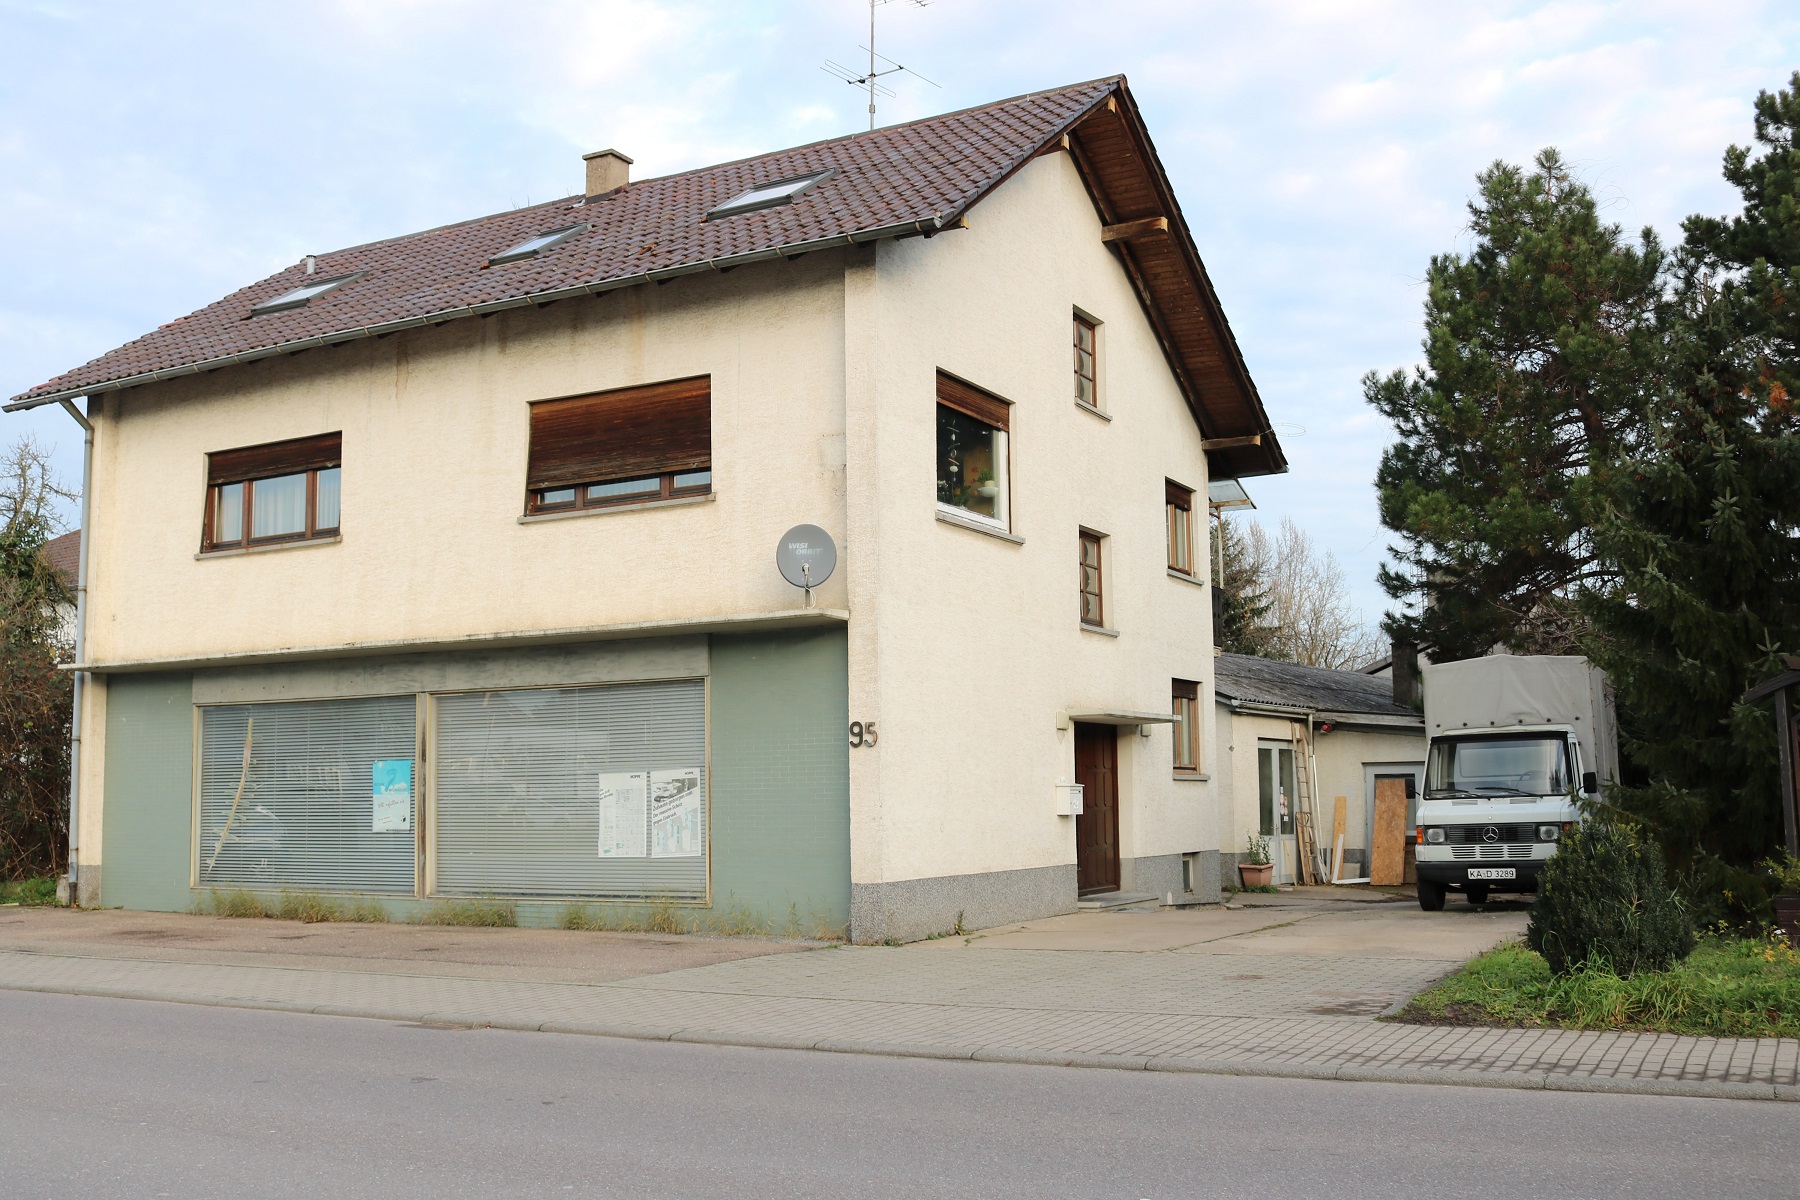  Das Areal Sebold umfasst das ehemalige Wohnhaus Ringstraße 95 mit angrenzender Werkstatt im rückwärtigen Bereich sowie zwei weitere Gebäude rechts Richtung Durlacher Straße 